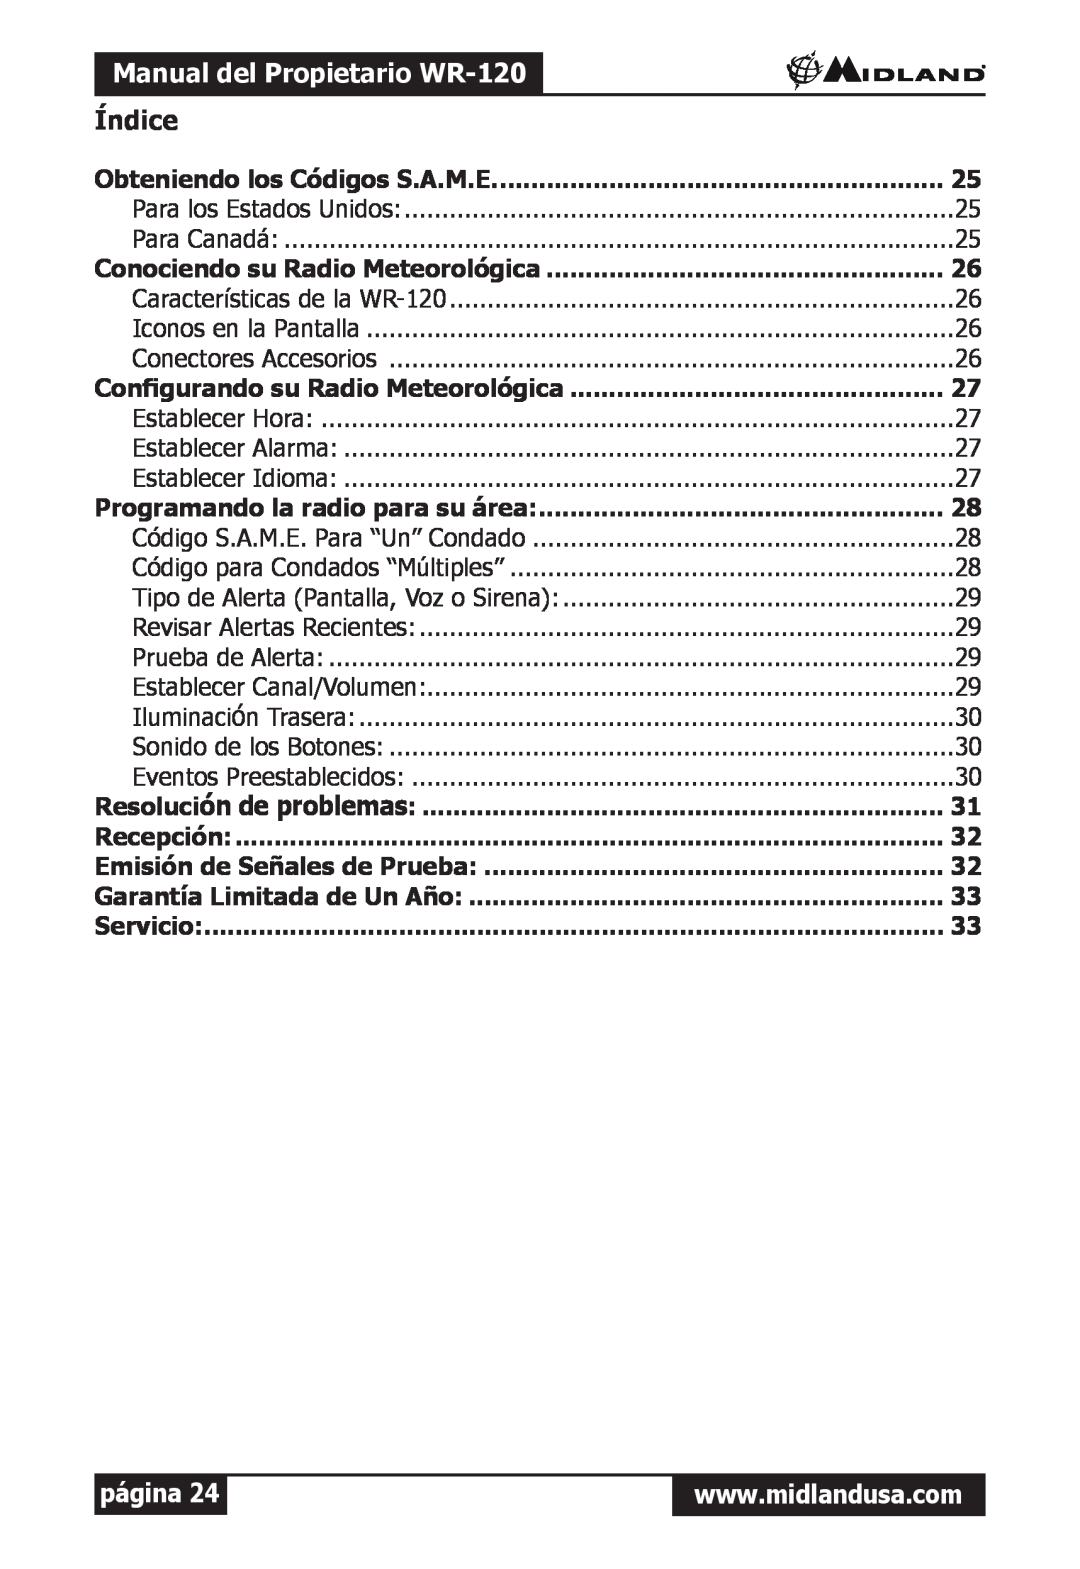 Midland Radio owner manual Manual del Propietario WR-120, Índice, Obteniendo los Códigos S.A.M.E, página 